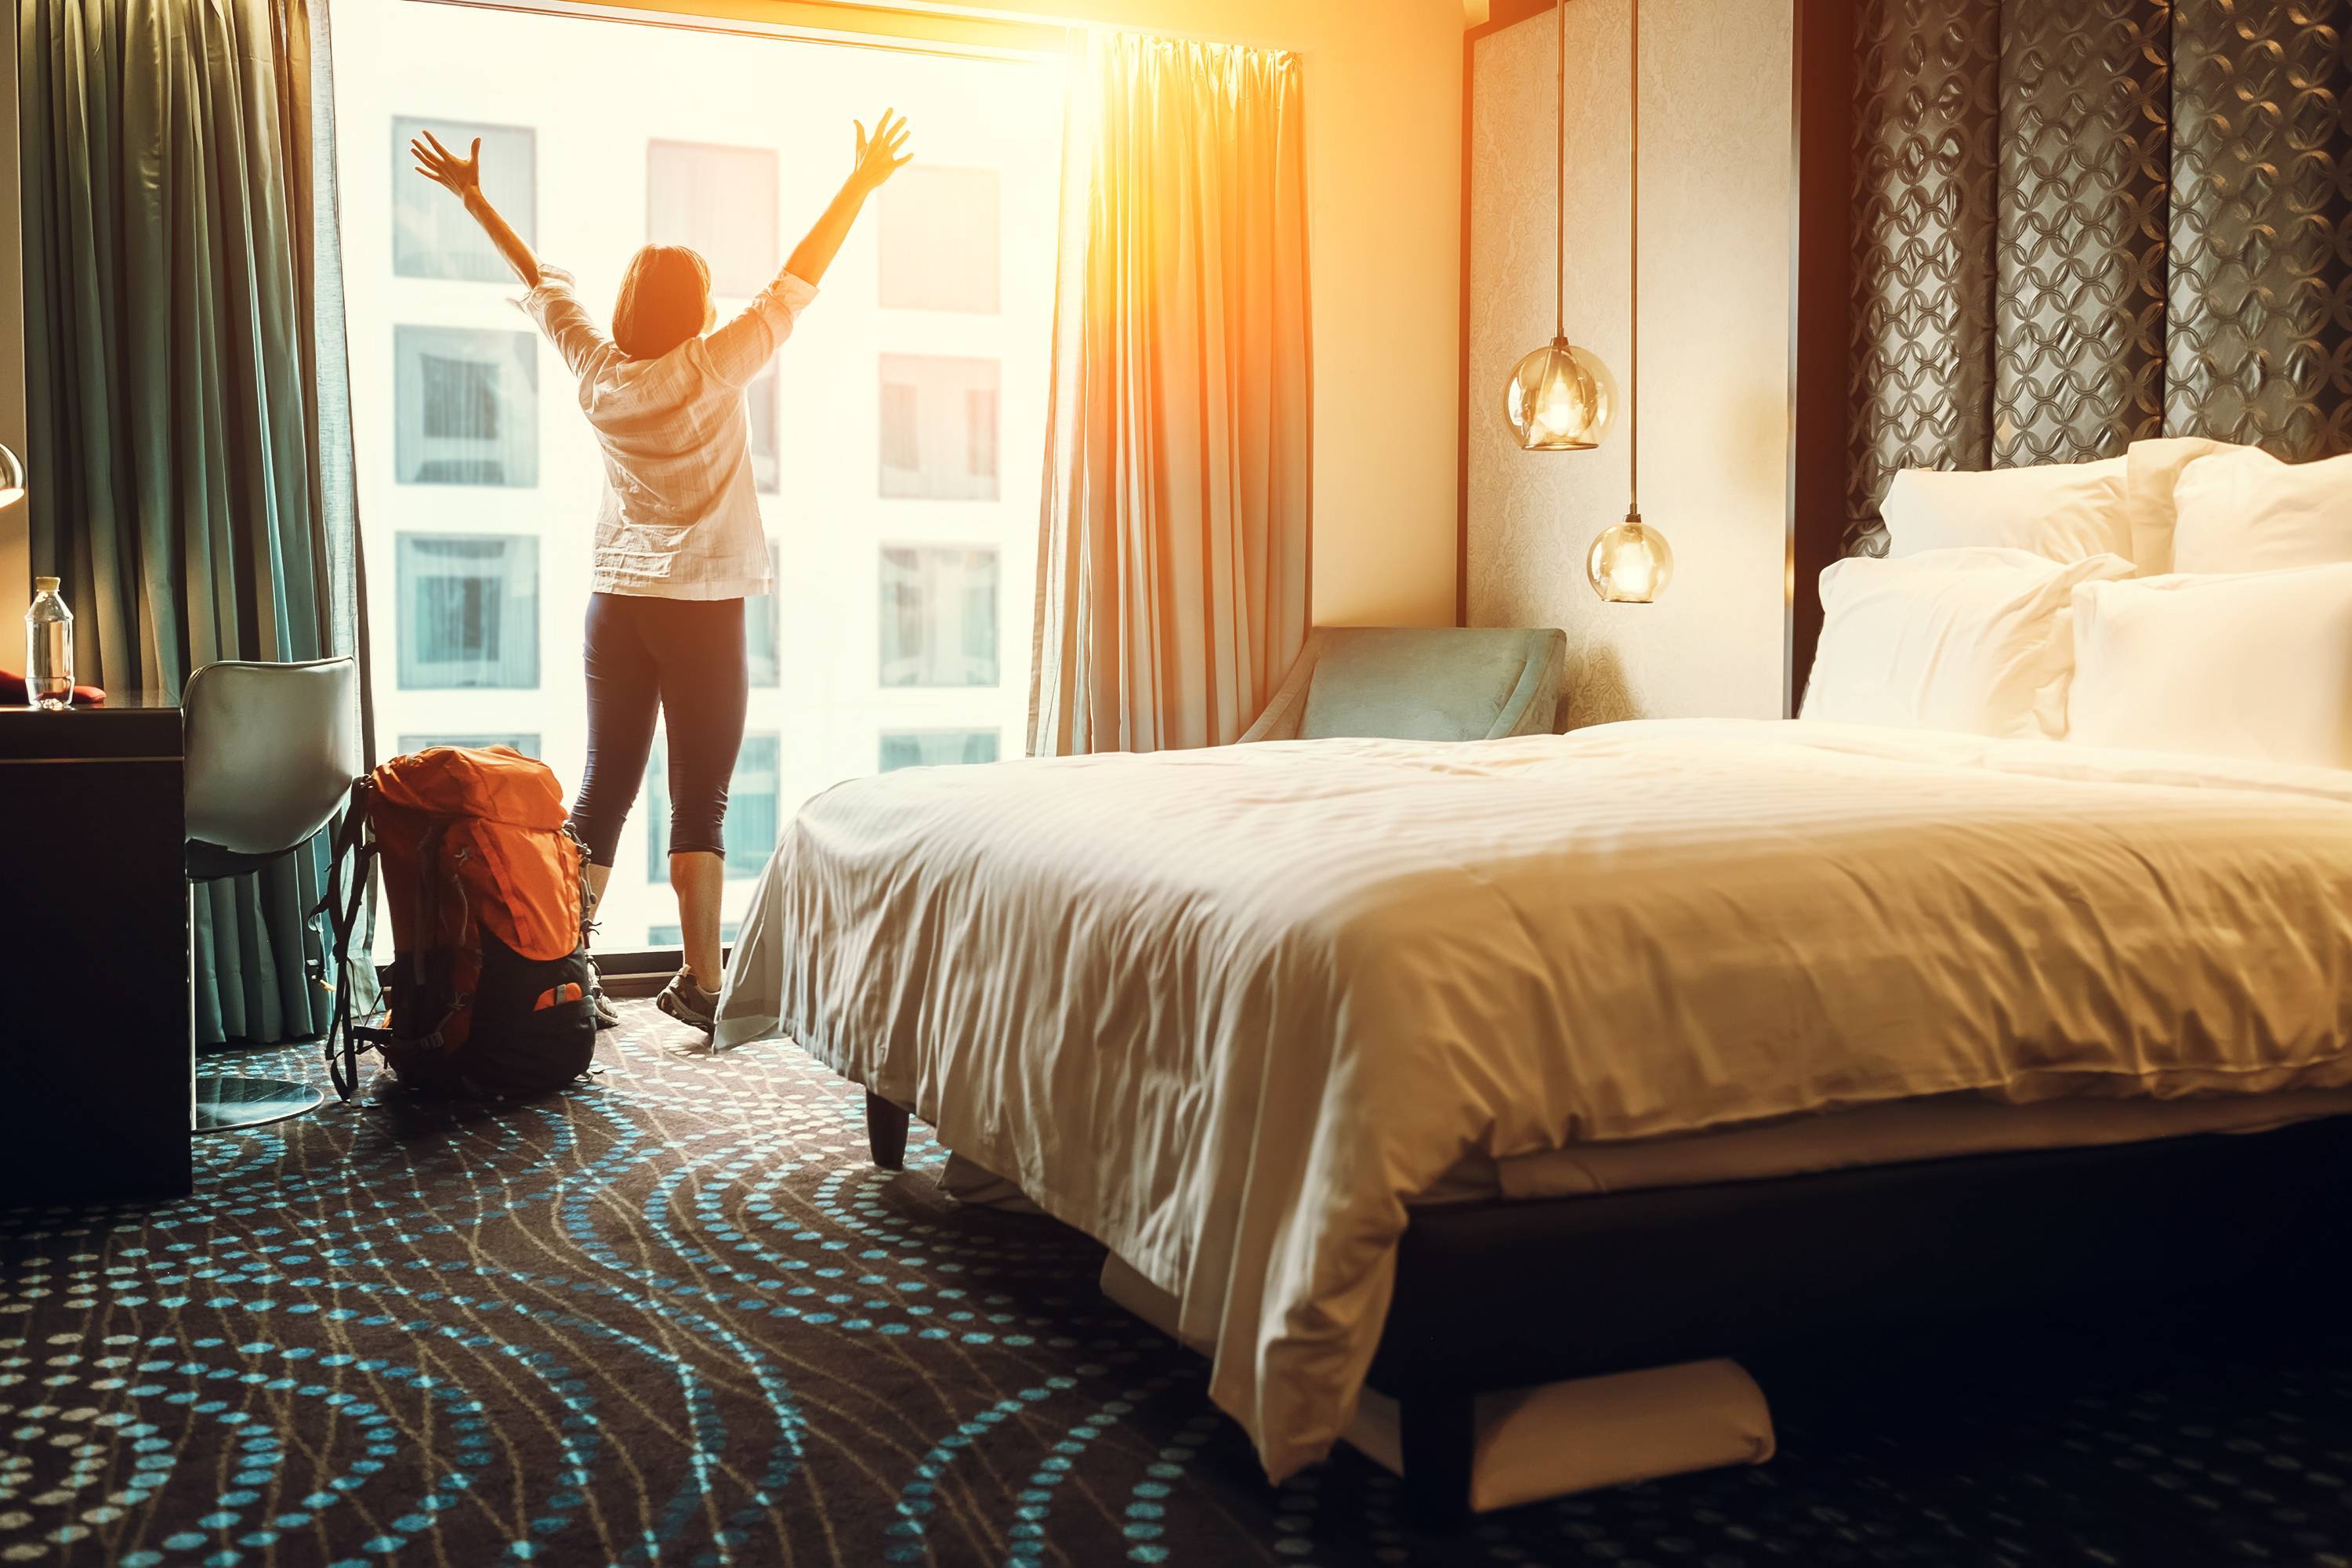 Хорошо, как в отеле: 8 секретов дизайна гостиничных номеров, которые нужно применять дома